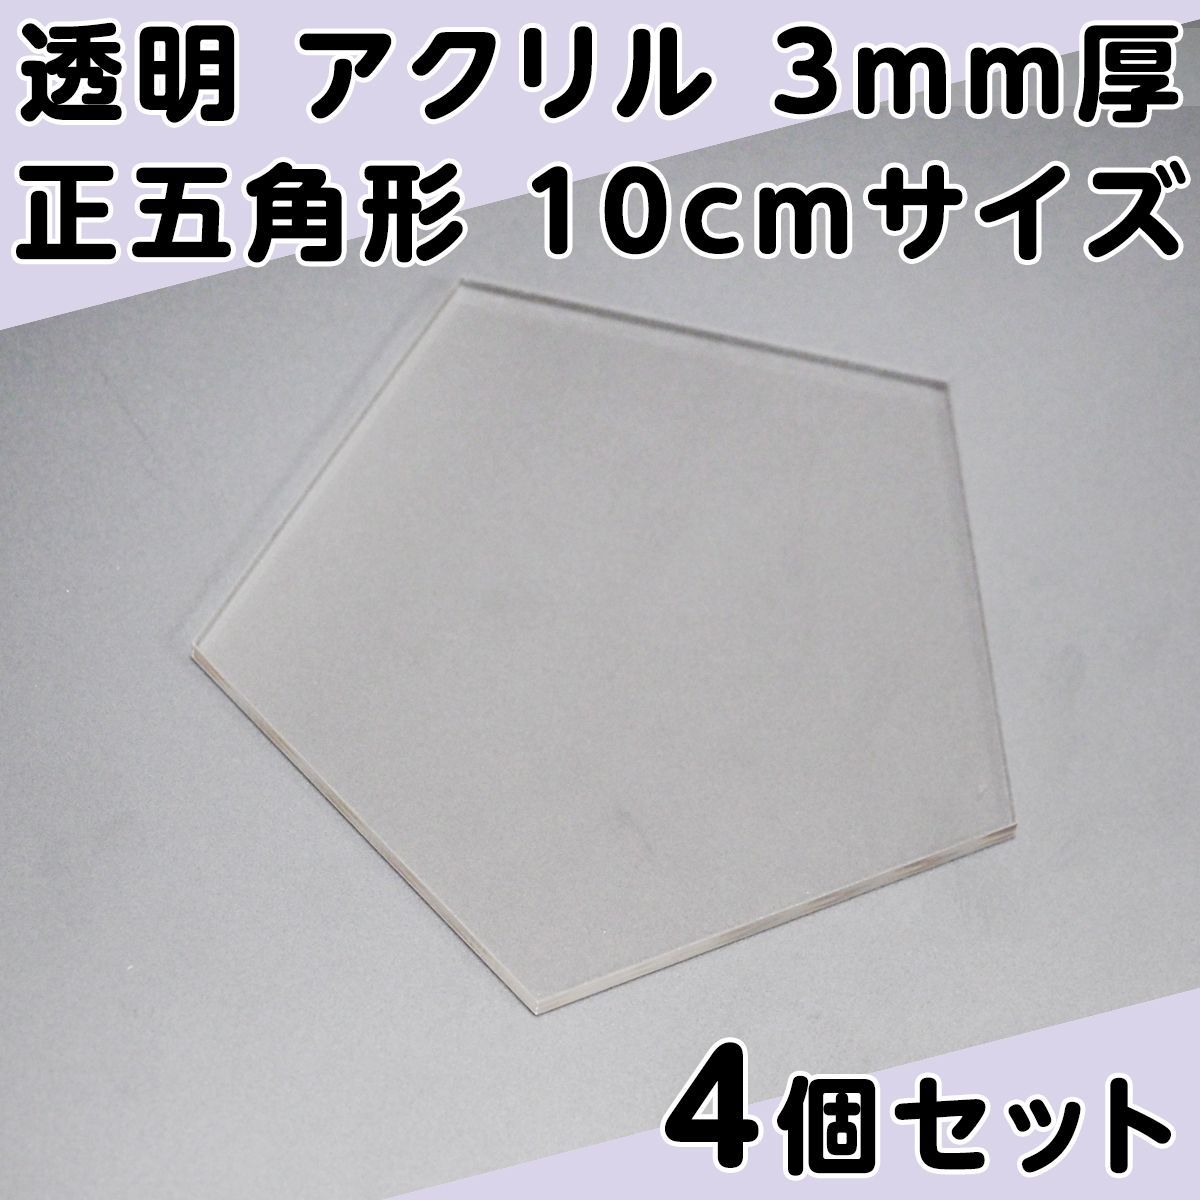 透明 アクリル 3mm厚 正五角形 10cmサイズ 4個セット - メルカリ